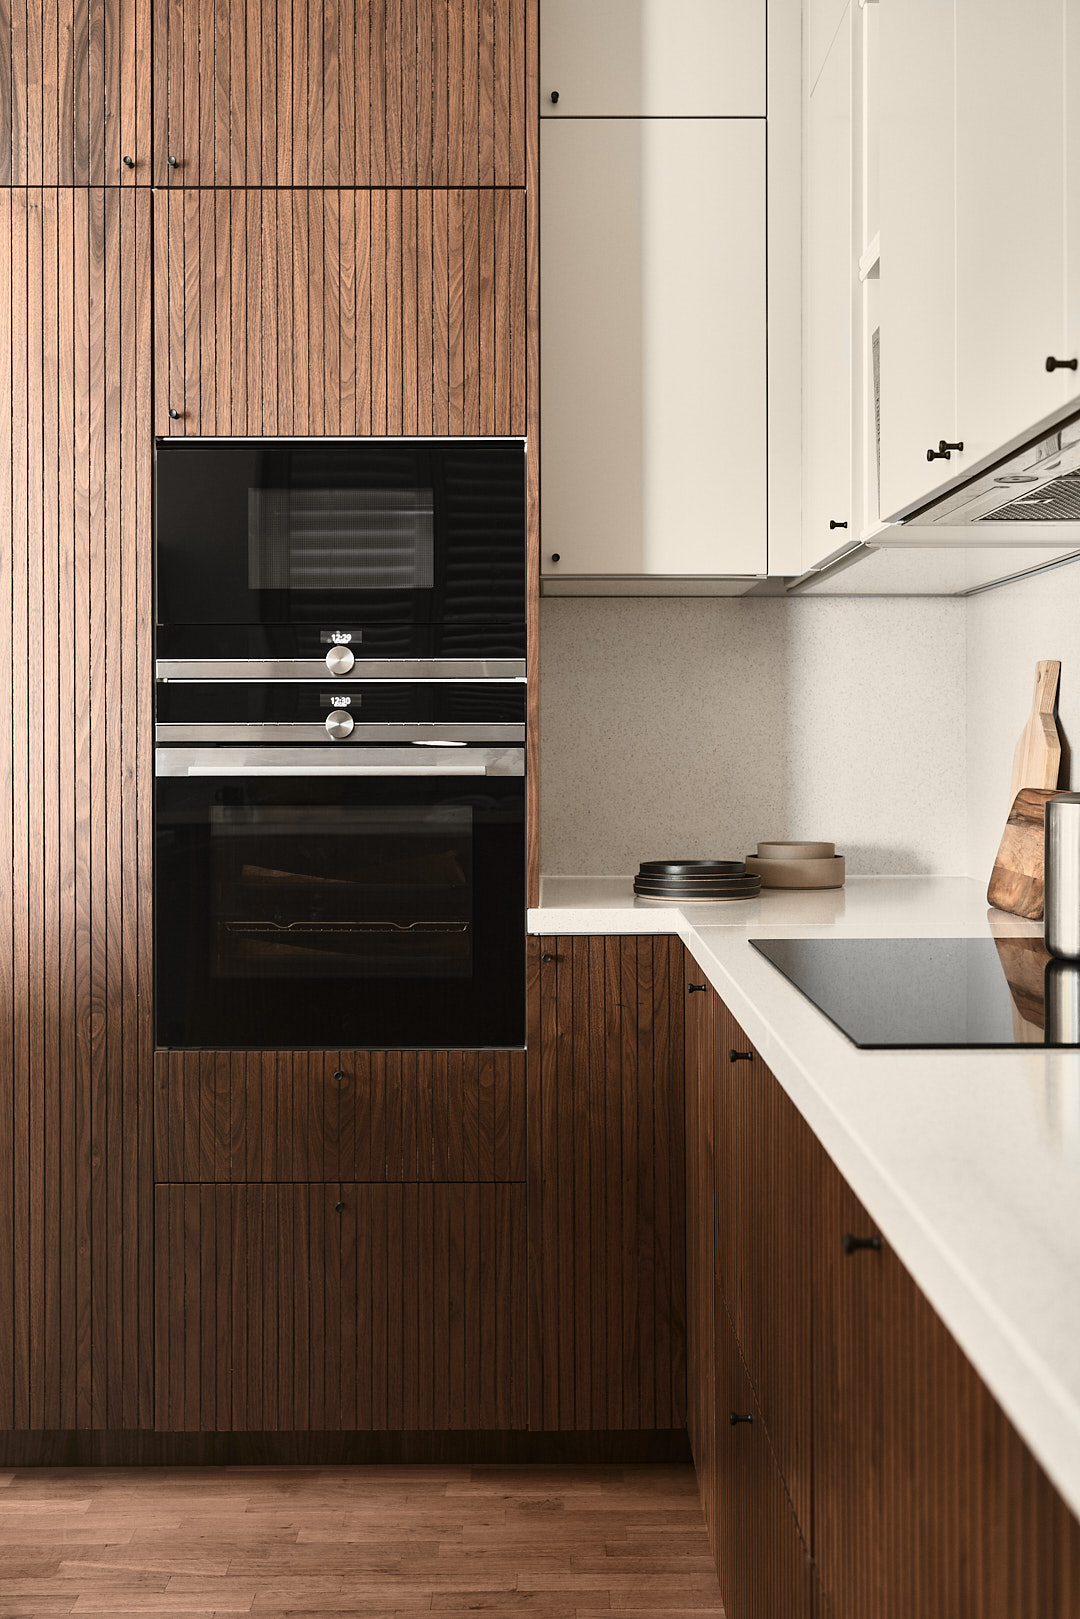 FRØPT Küchenfronten, das besondere Highlight für deine IKEA Küche - so einfach geht die Planung und Umsetzung. Ein IKEA Hack | Pinspiration.de